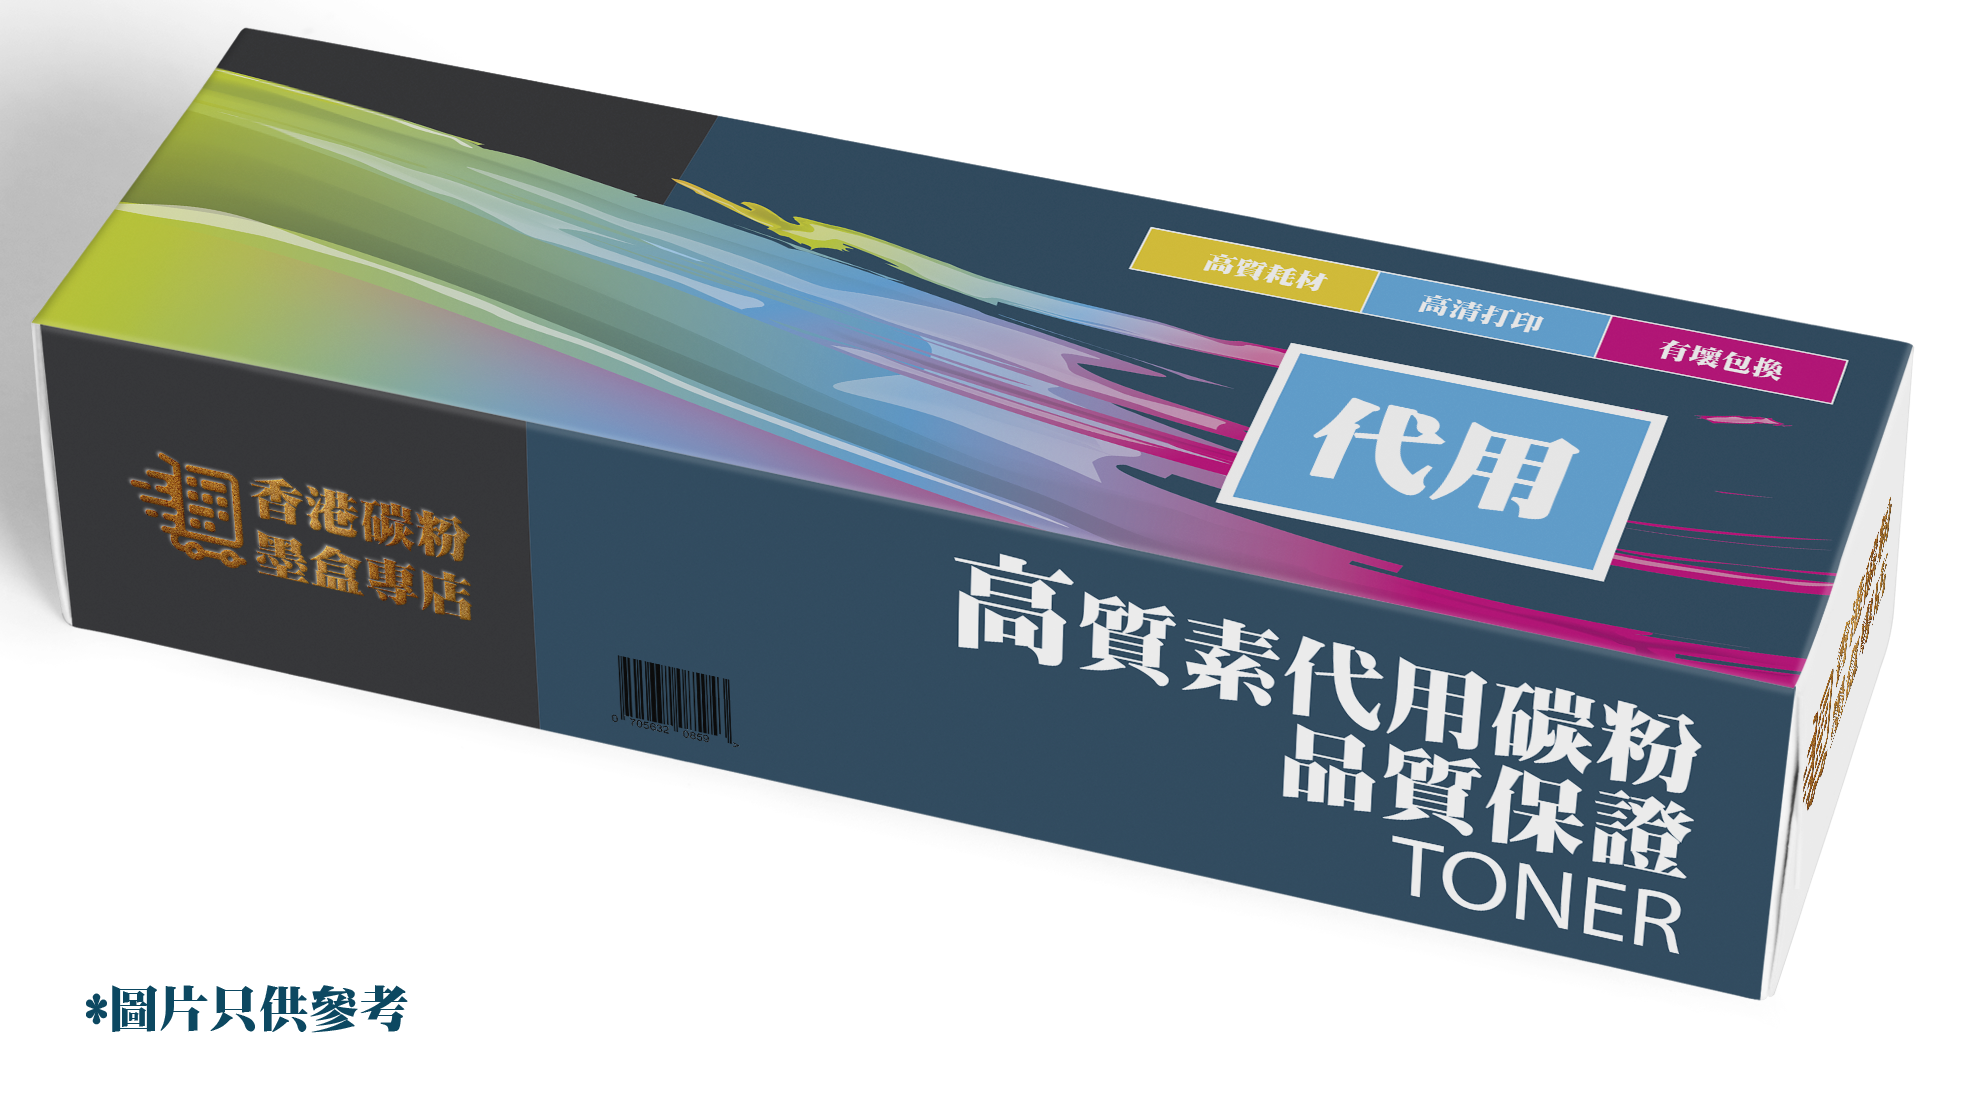 HP Toner 代用碳粉CB381A 823A 原裝藍色代用碳粉– 香港碳粉墨盒專店|碳粉|辦公室碳粉|代用碳粉